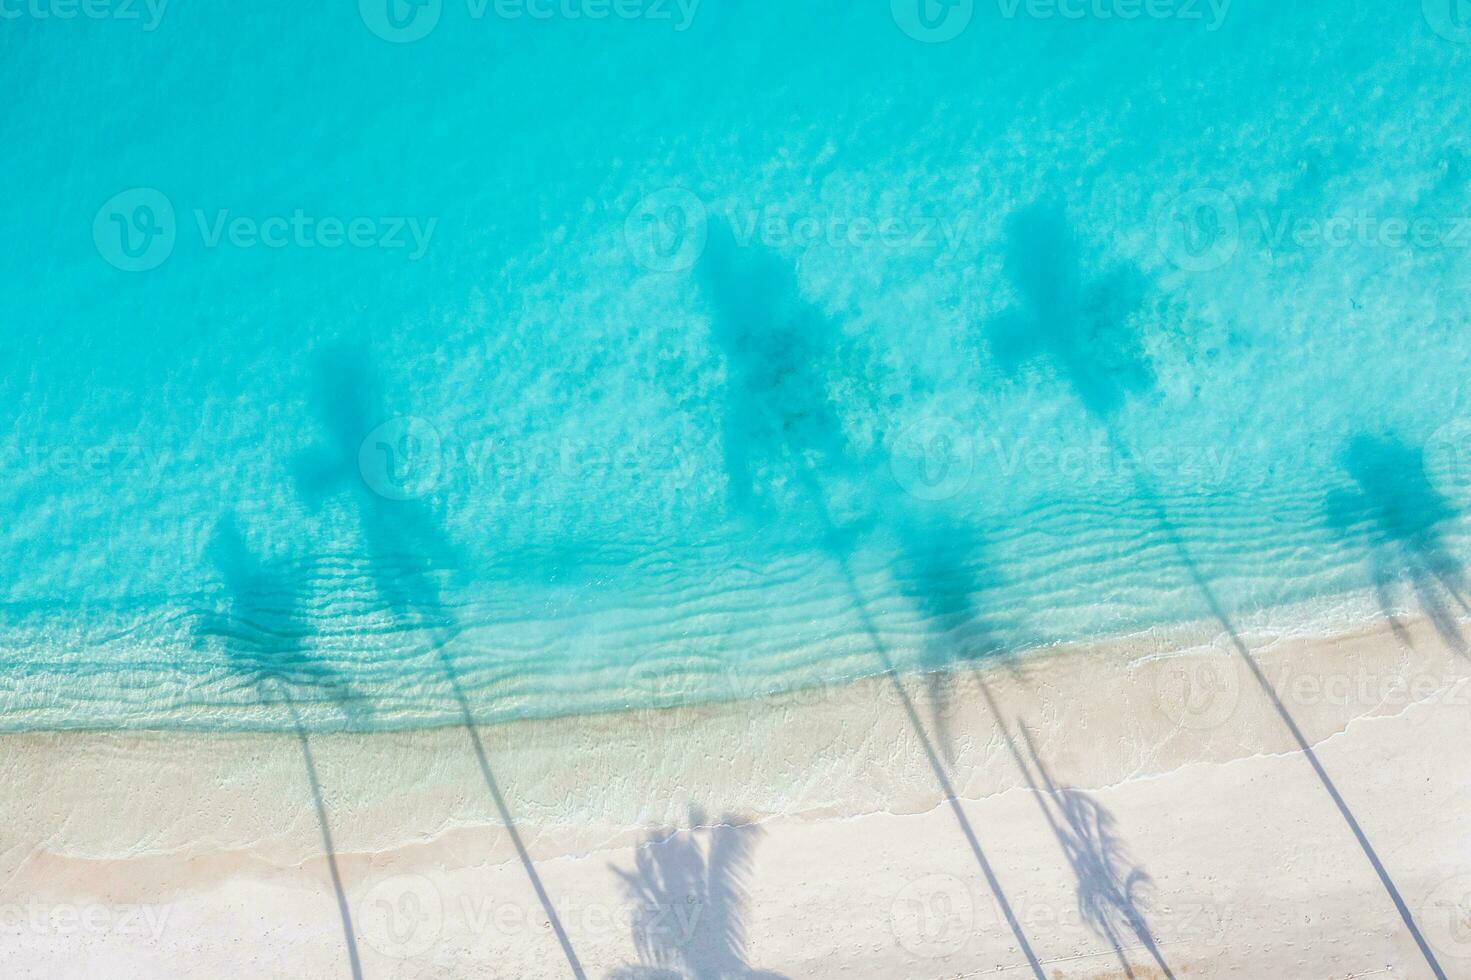 hermosa sombra de palmeras en la playa de arena y el océano turquesa desde arriba. increíble paisaje natural de verano. impresionante paisaje de playa soleada relajante plantilla de vacaciones de playa pacífica e inspiradora foto